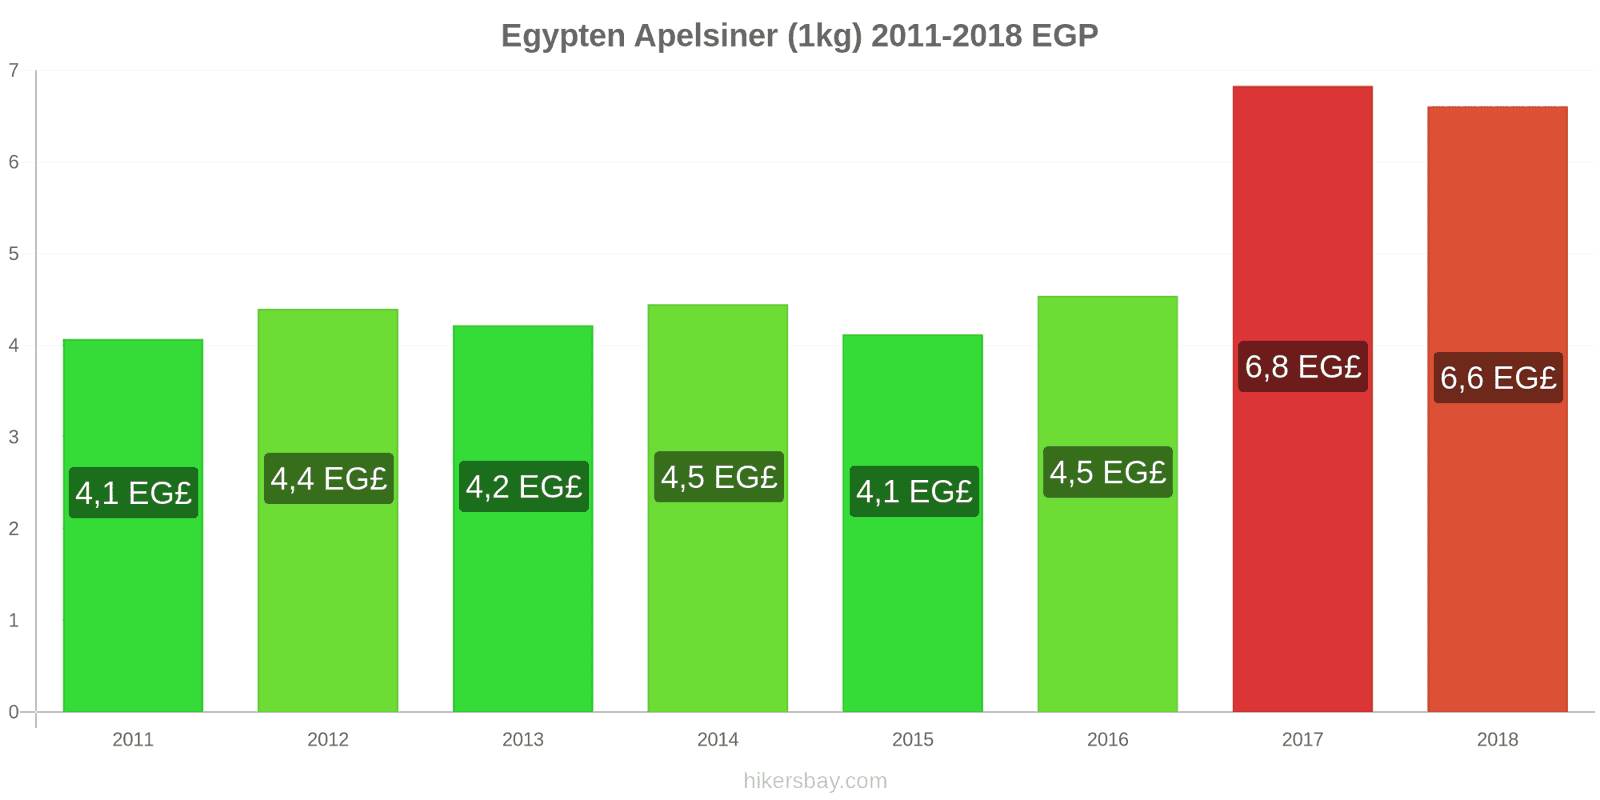 Egypten prisändringar Apelsiner (1kg) hikersbay.com